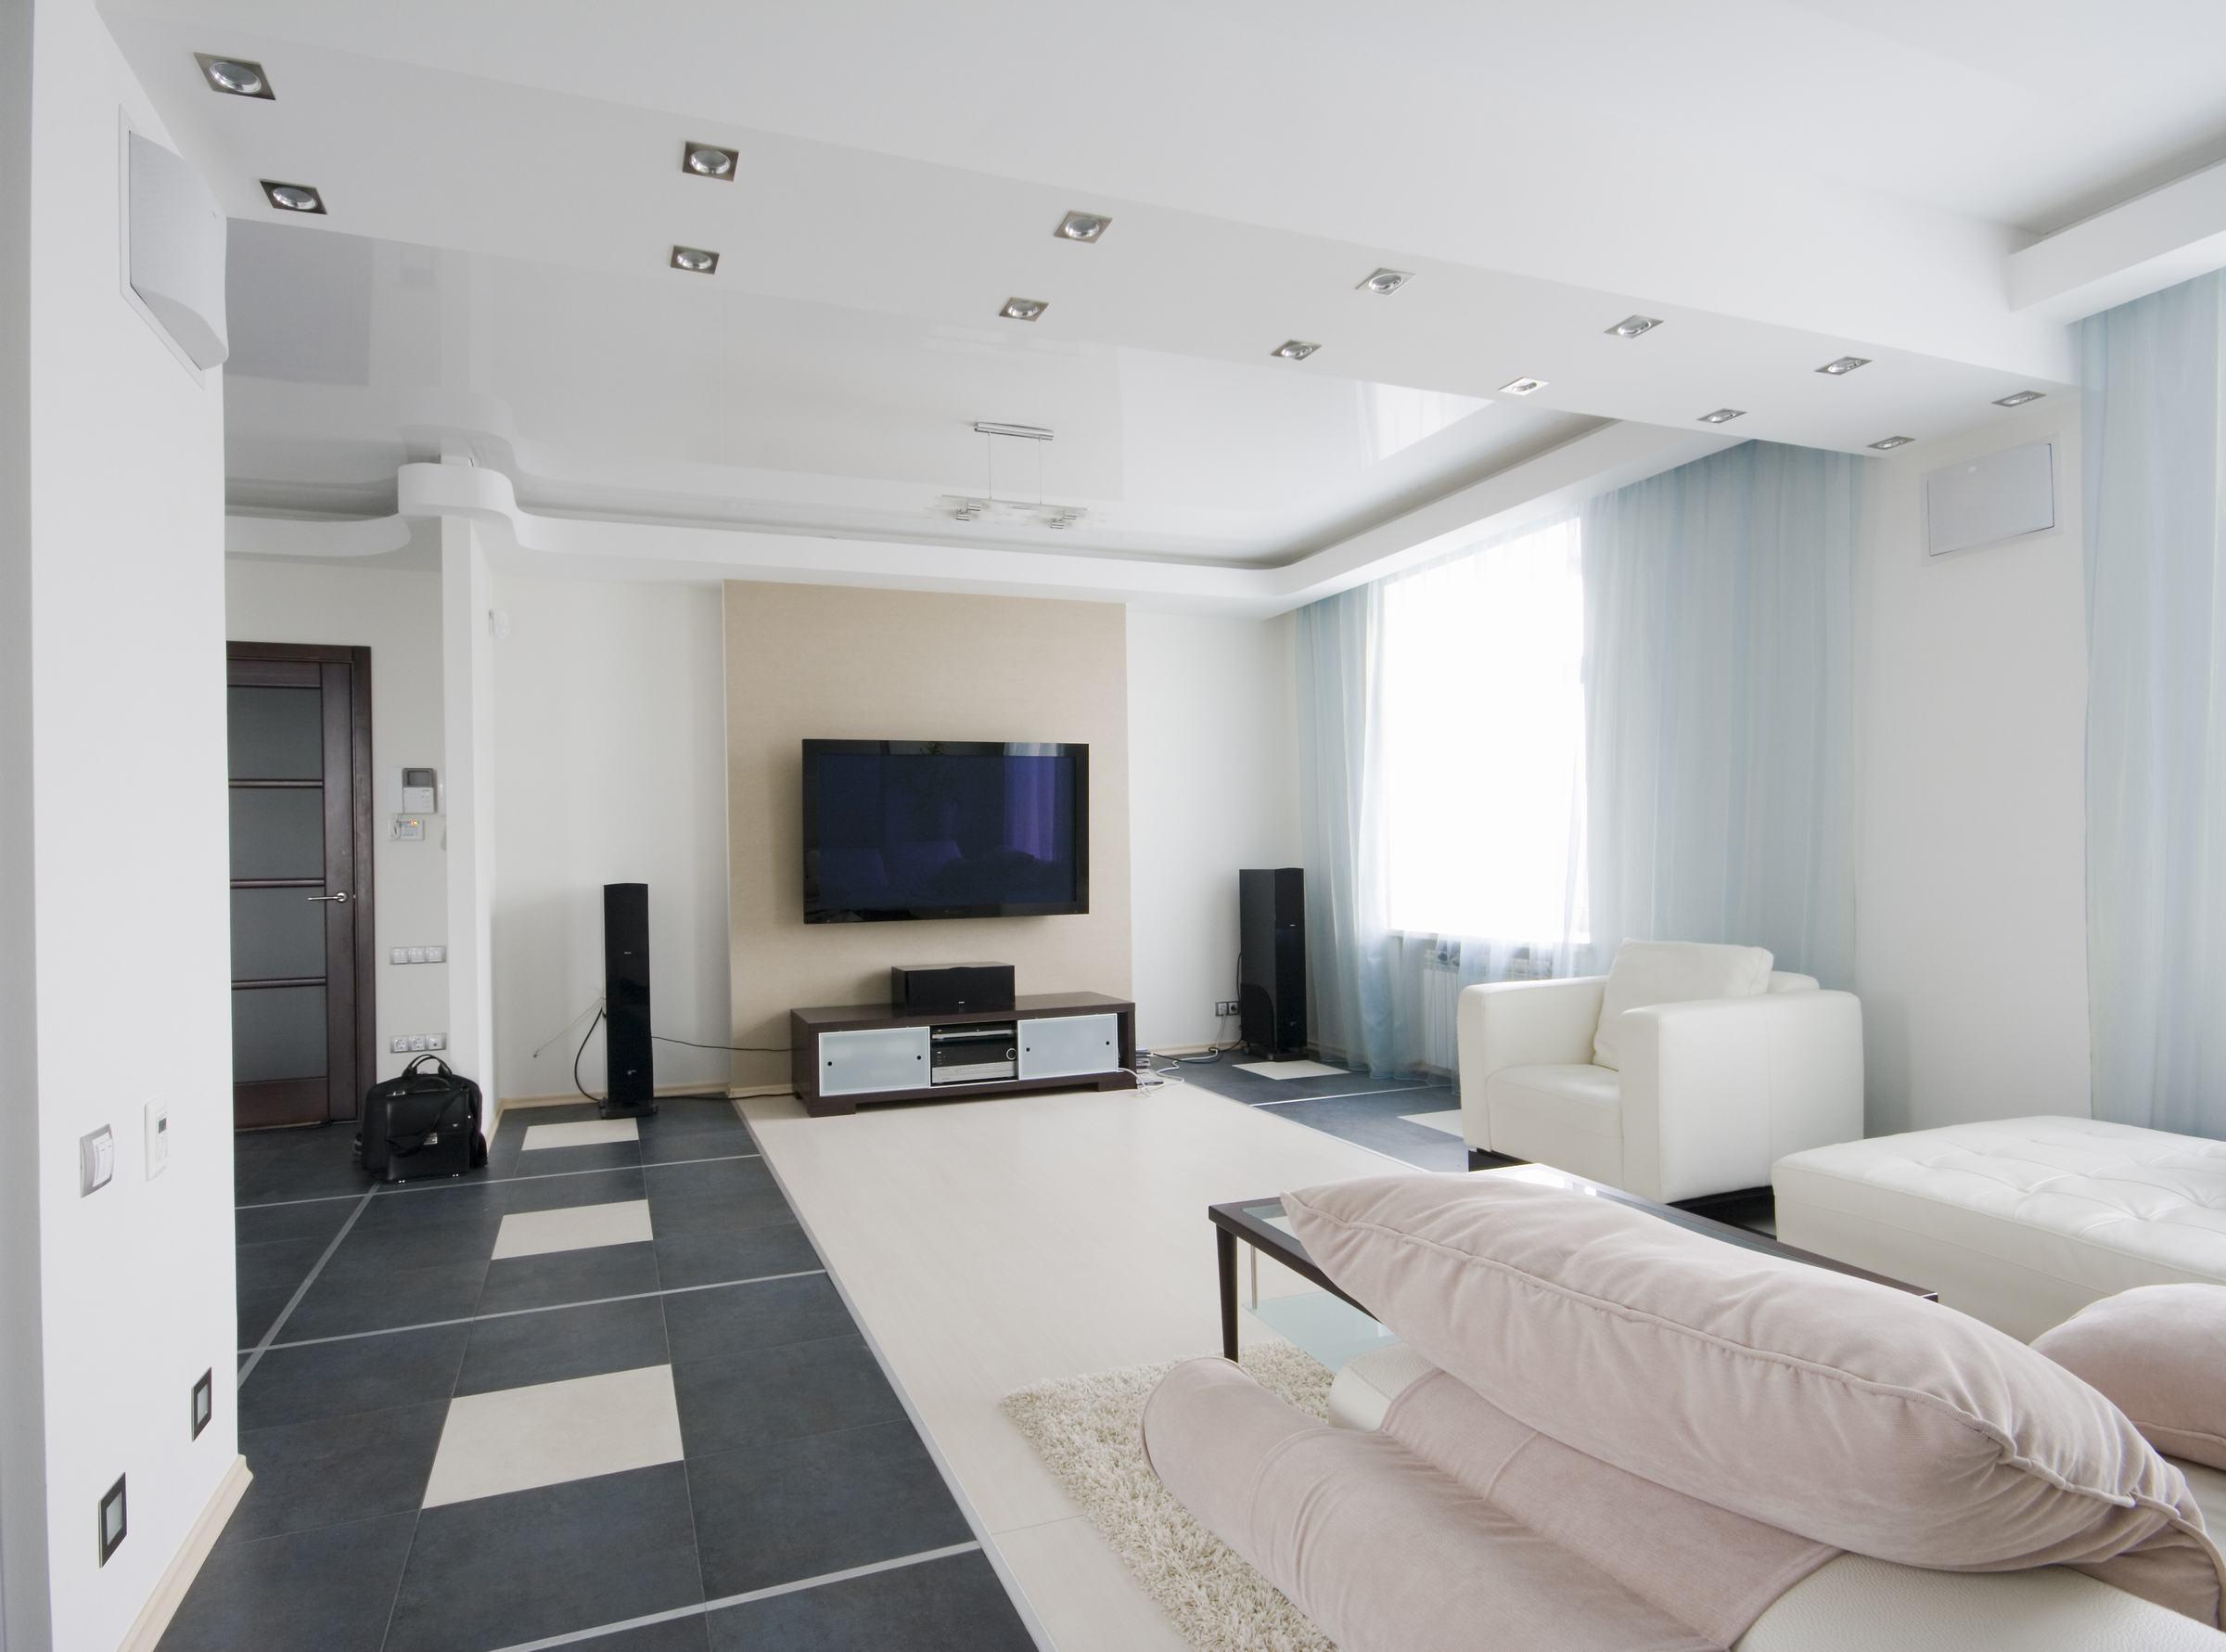 Trần Thạch cao phòng khách giúp không gian nhà bạn trở nên sang trọng và đẳng cấp hơn. Chúng tôi cam kết đem đến cho bạn một sản phẩm chất lượng, đáp ứng mọi yêu cầu về thẩm mỹ và ứng dụng. Hãy để cho không gian sống của bạn trở nên hoàn hảo hơn với trần Thạch cao phòng khách.